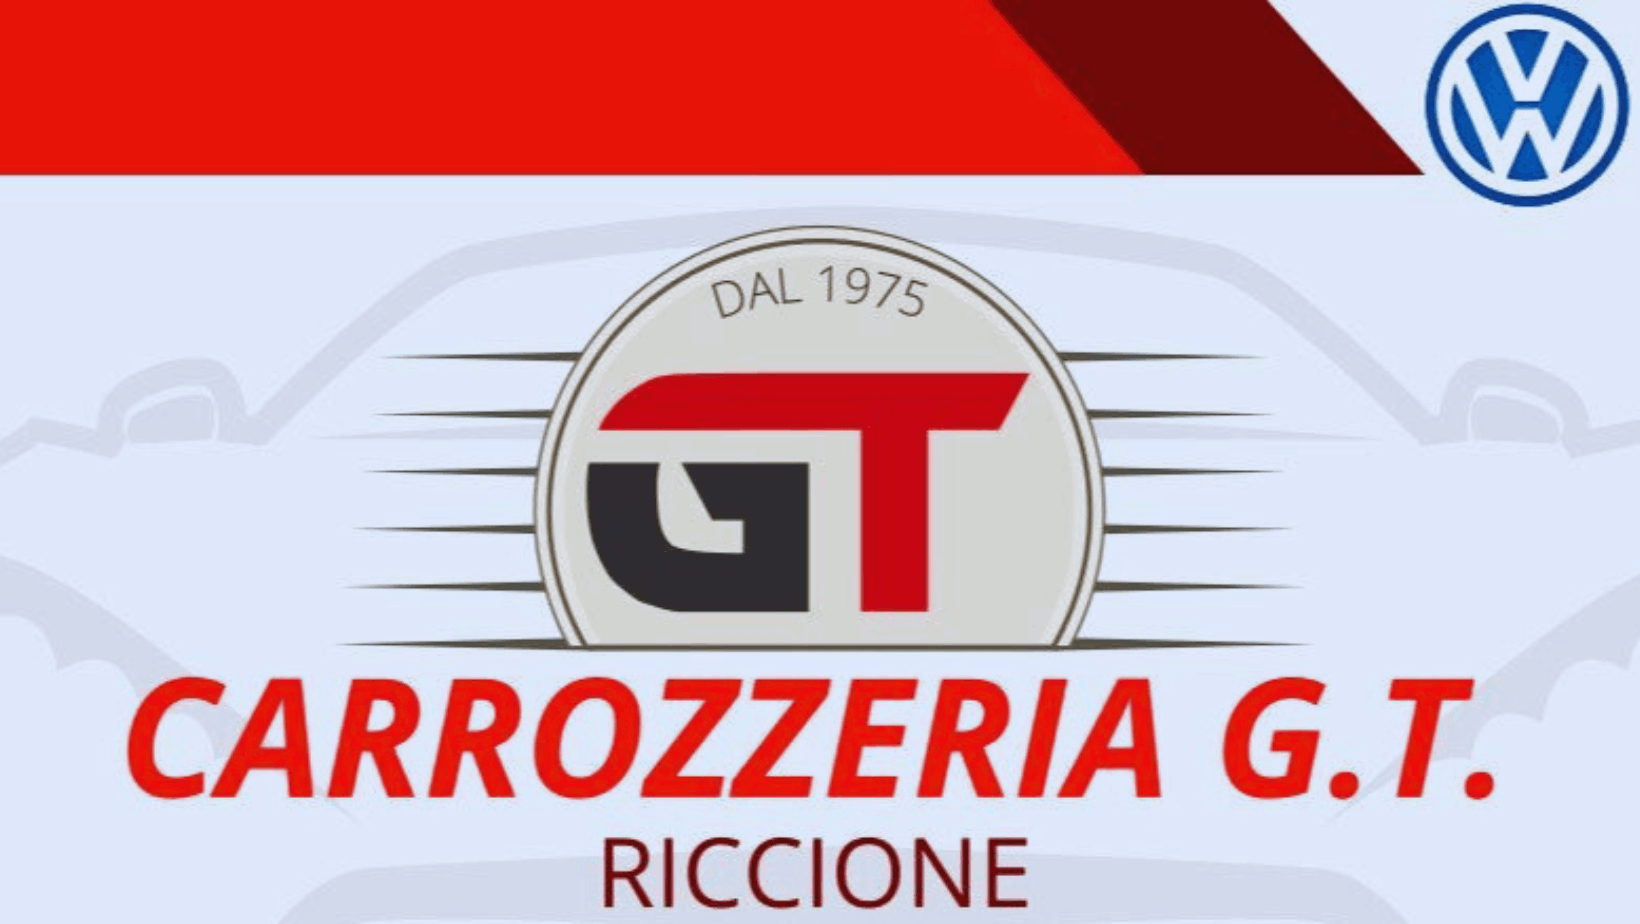 Carrozzeria G.T. Riccione